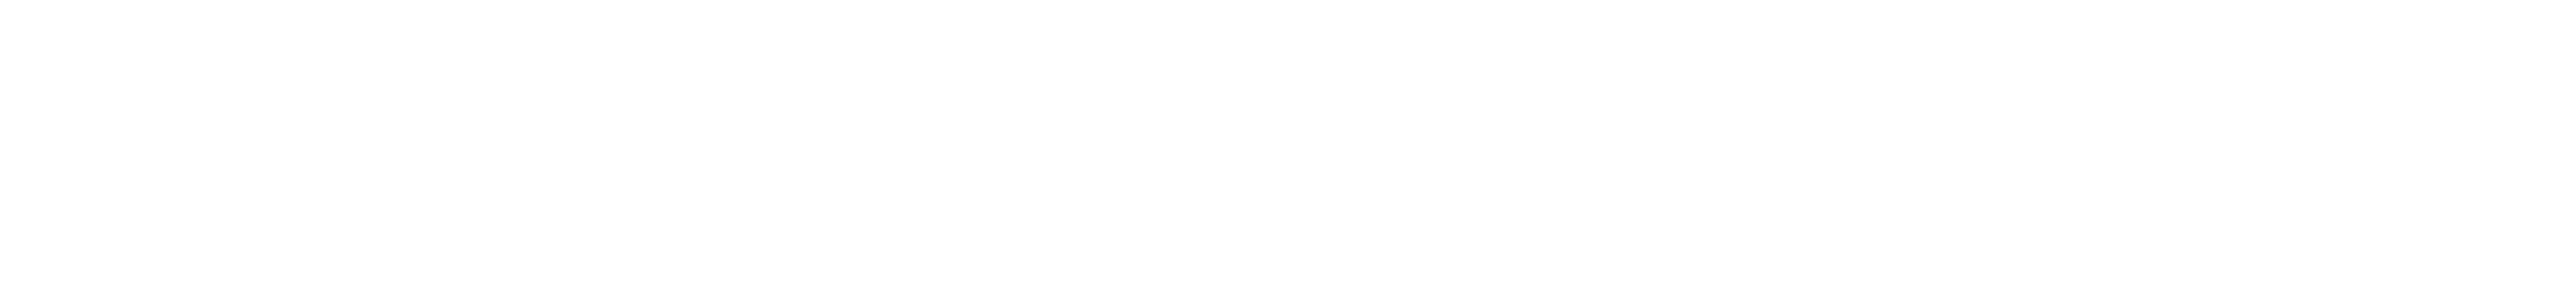 Michigan State University Logos Download